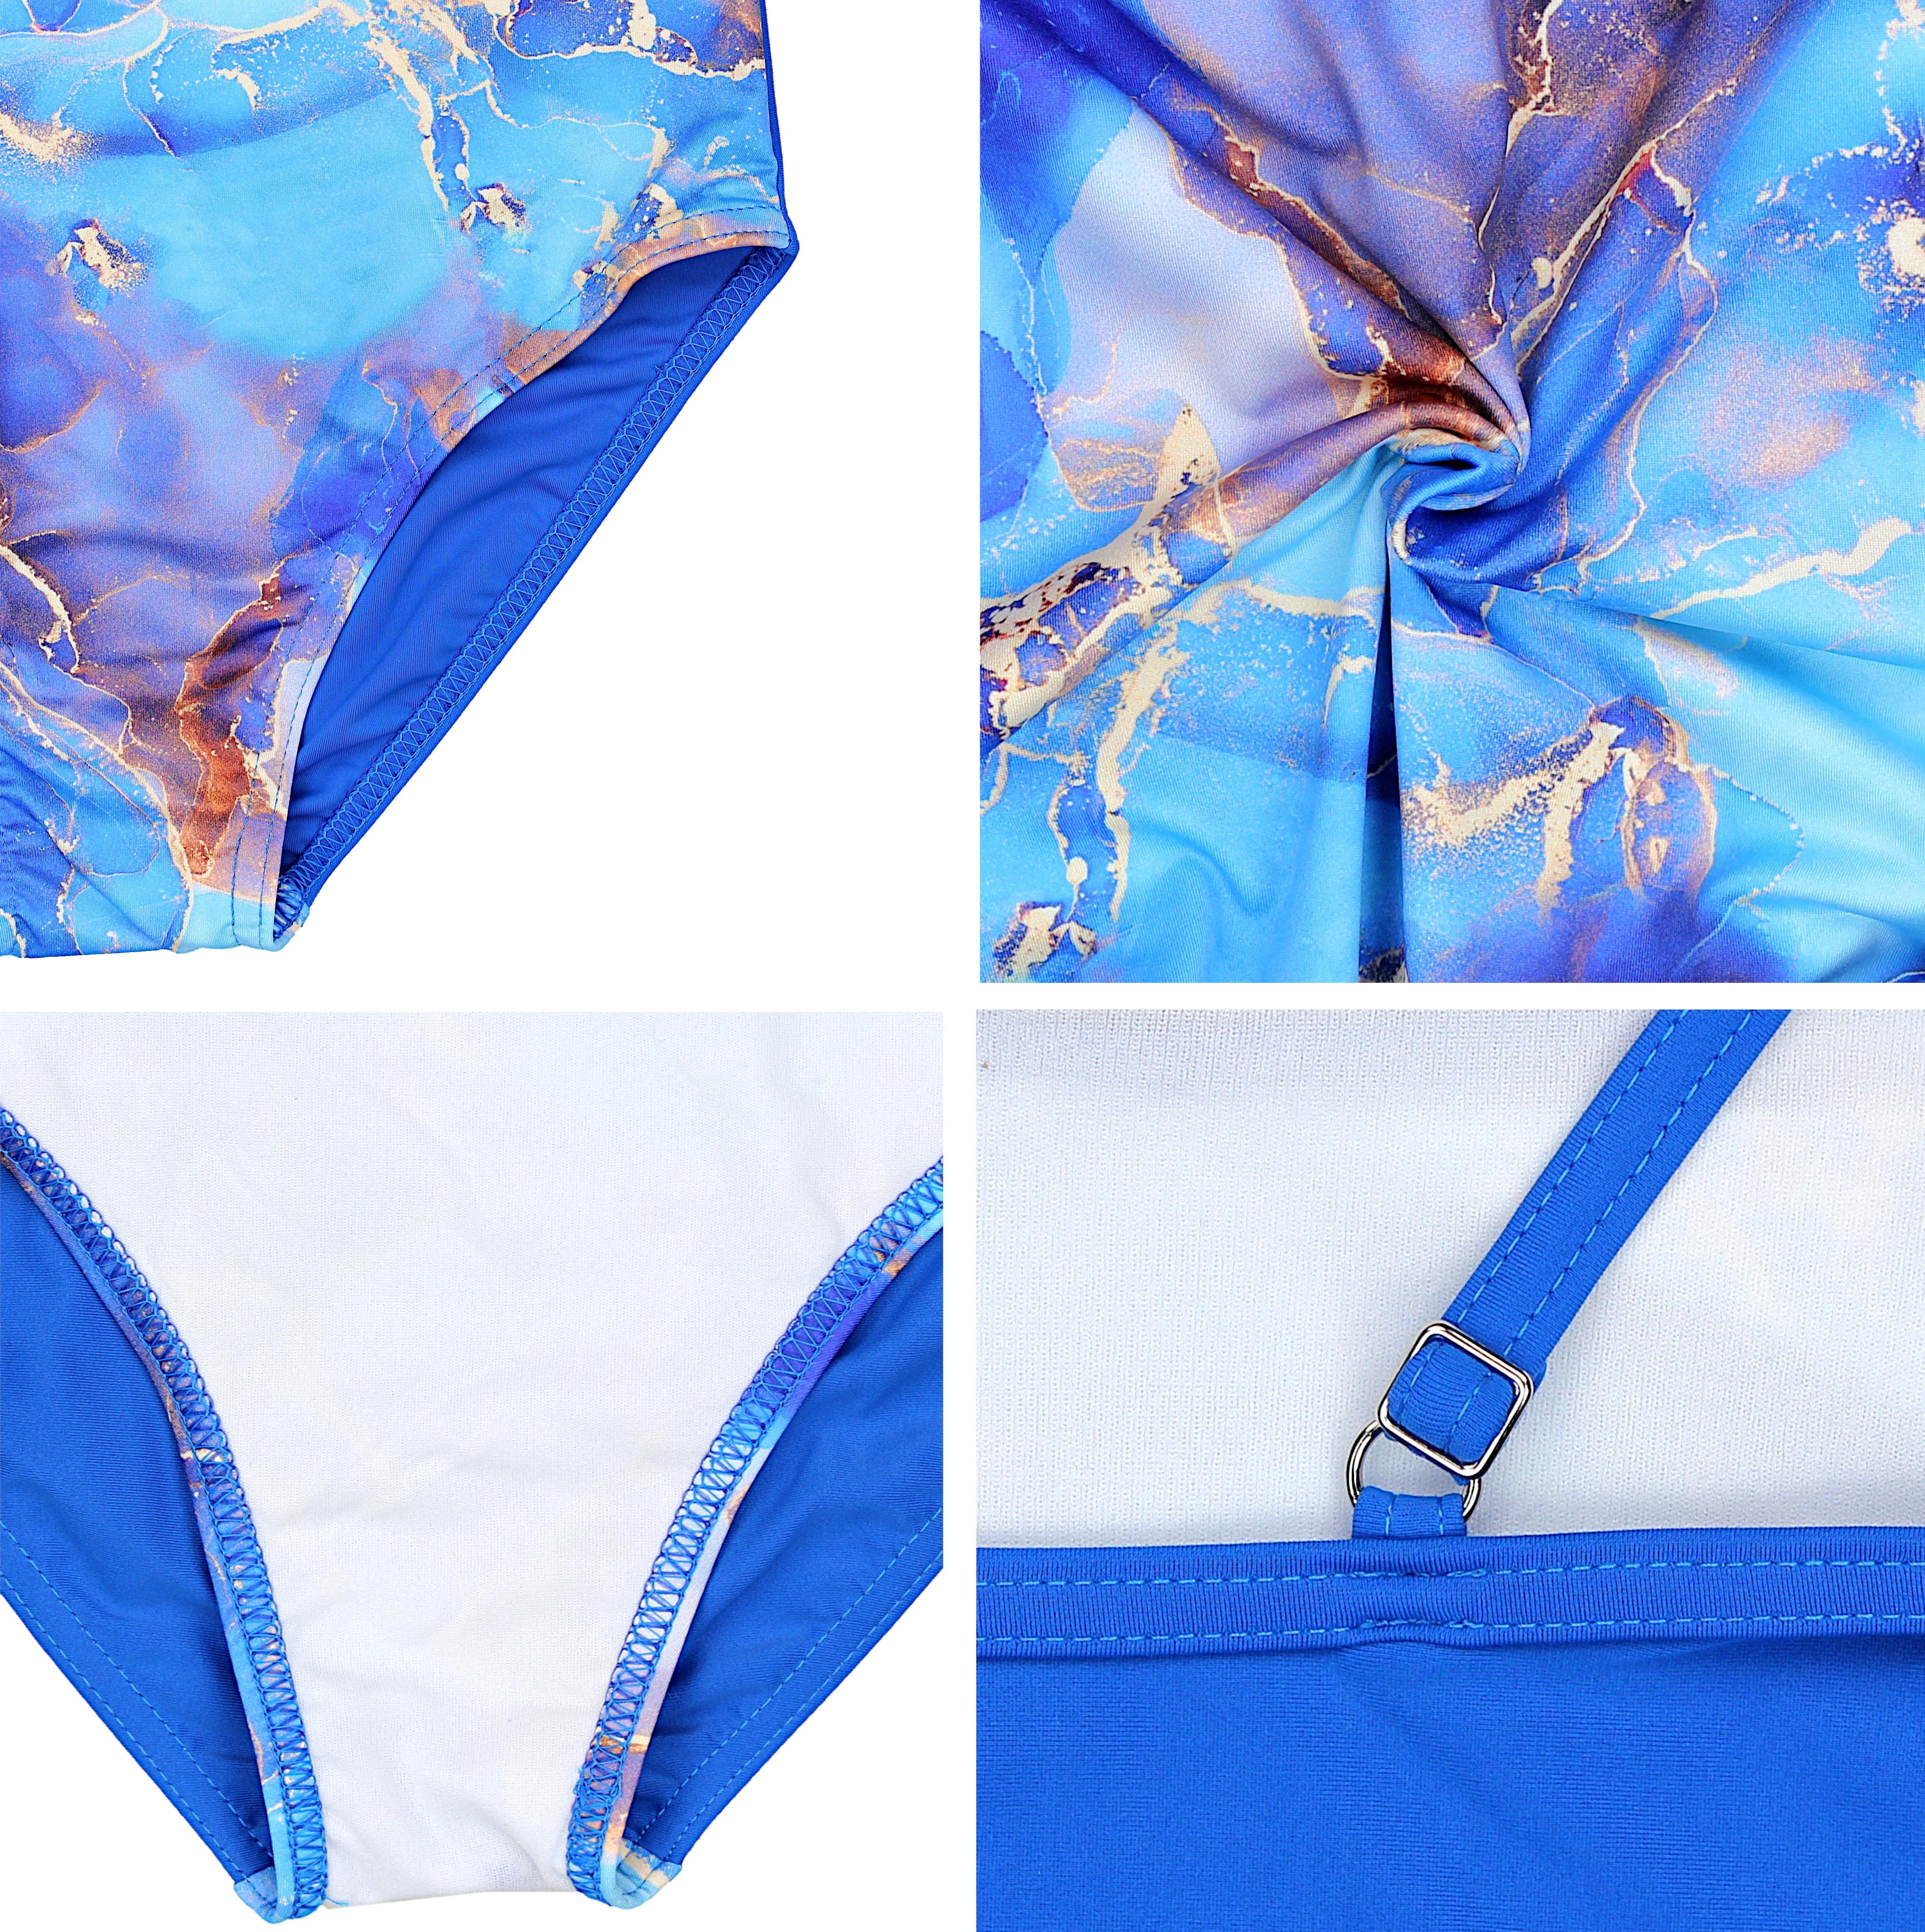 027B / Tie Aquarti Aquarti Badeanzug mit Mädchen Blau mit Streifen Dye Spaghettiträgern Badeanzug Rüschen /